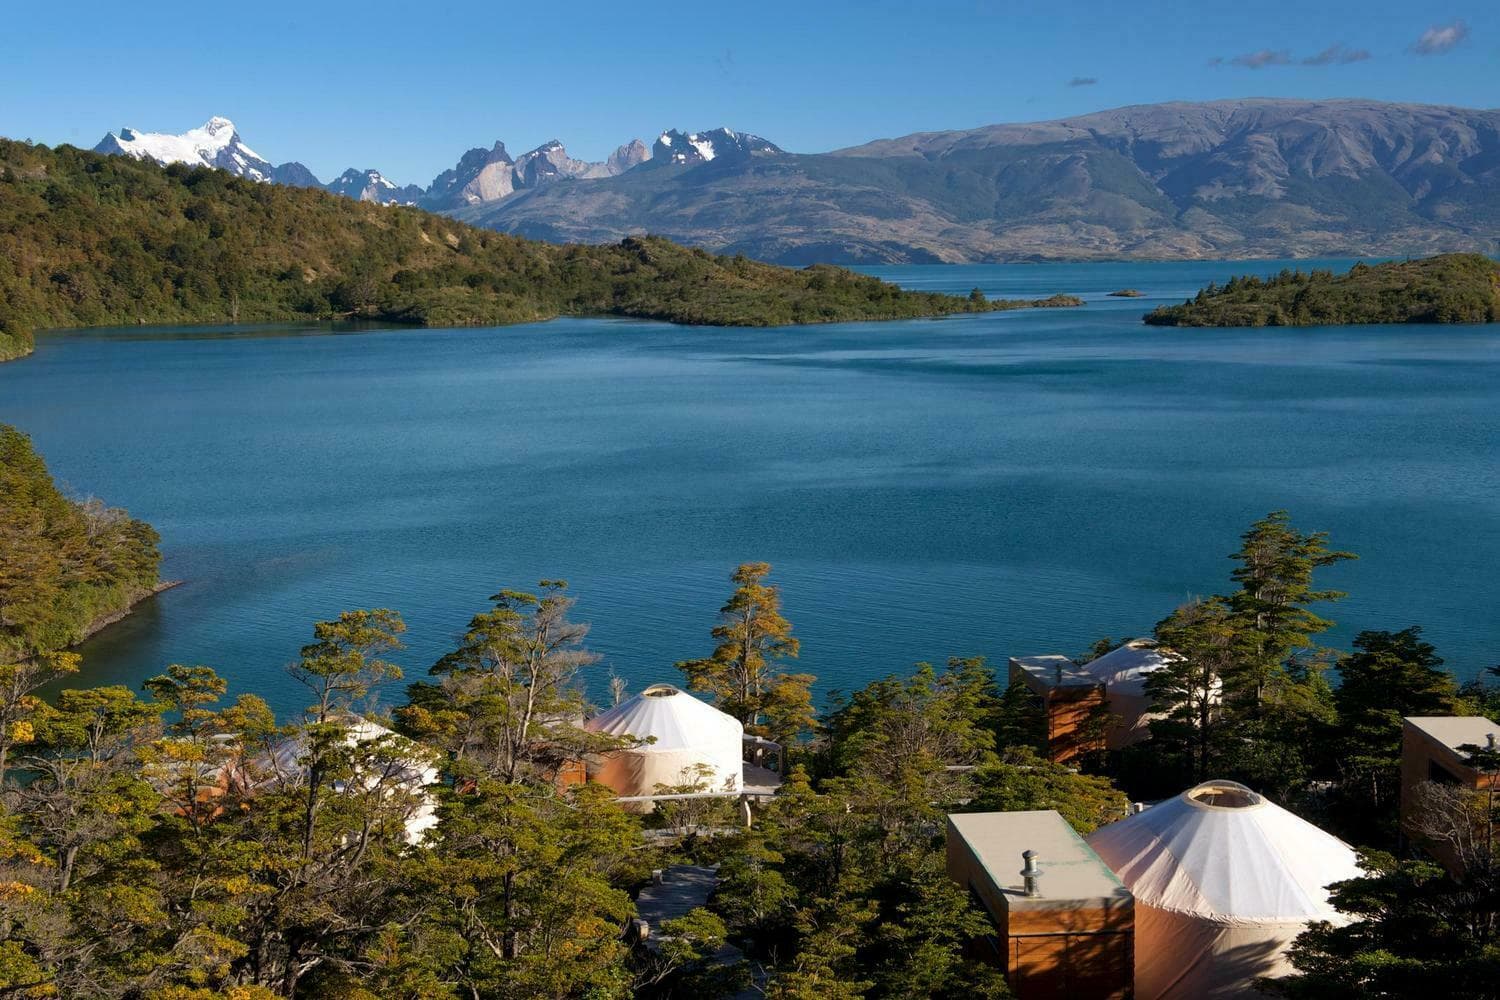 Chile patagonia torres del paine patagonia camp yurts and lake